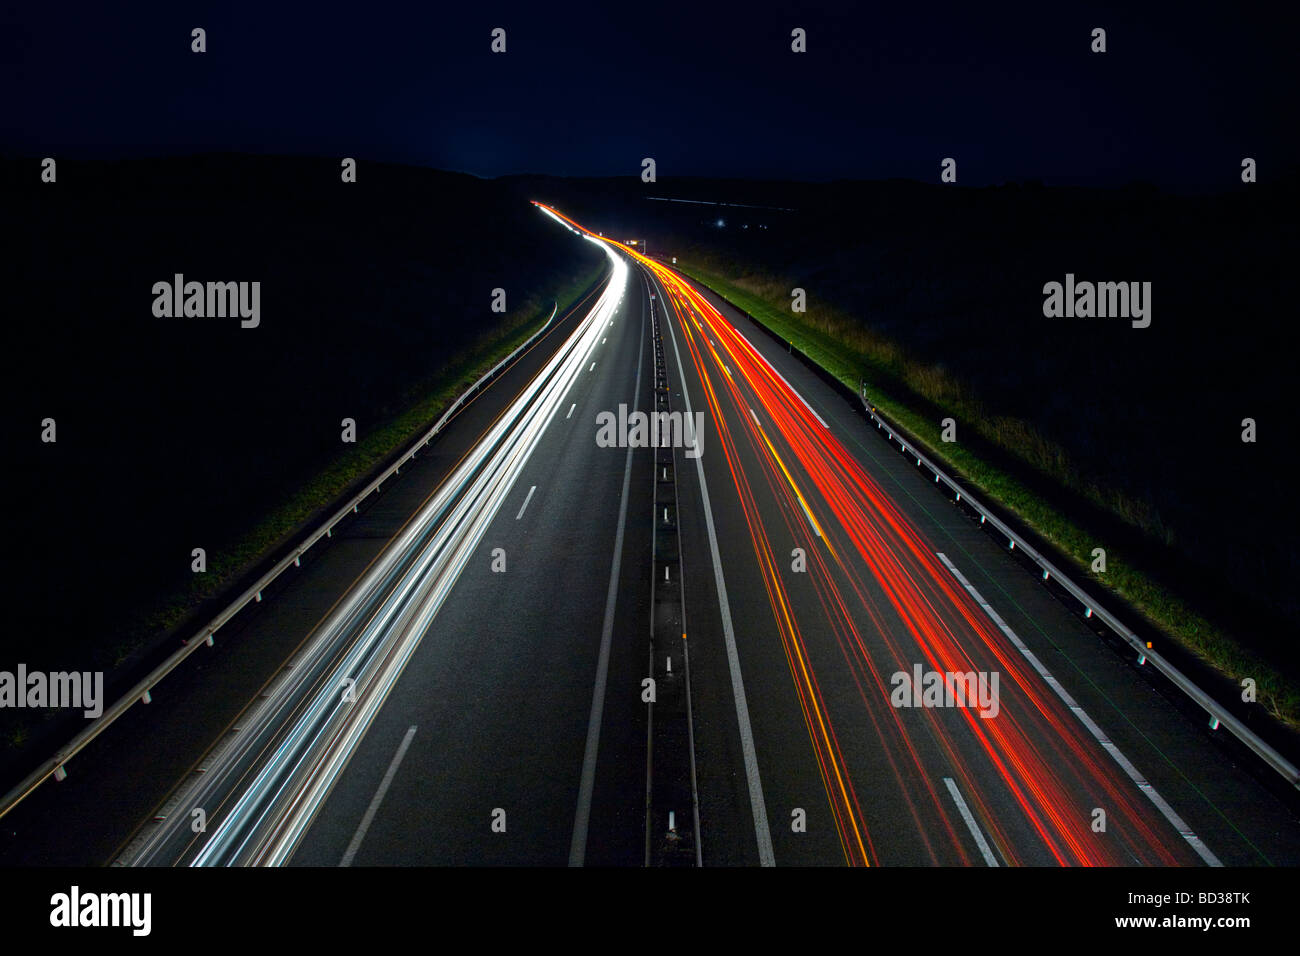 L'autoroute A71 la nuit (Allier - France). L''autoroute A71 de nuit (03 Allier - Auvergne - France). Banque D'Images